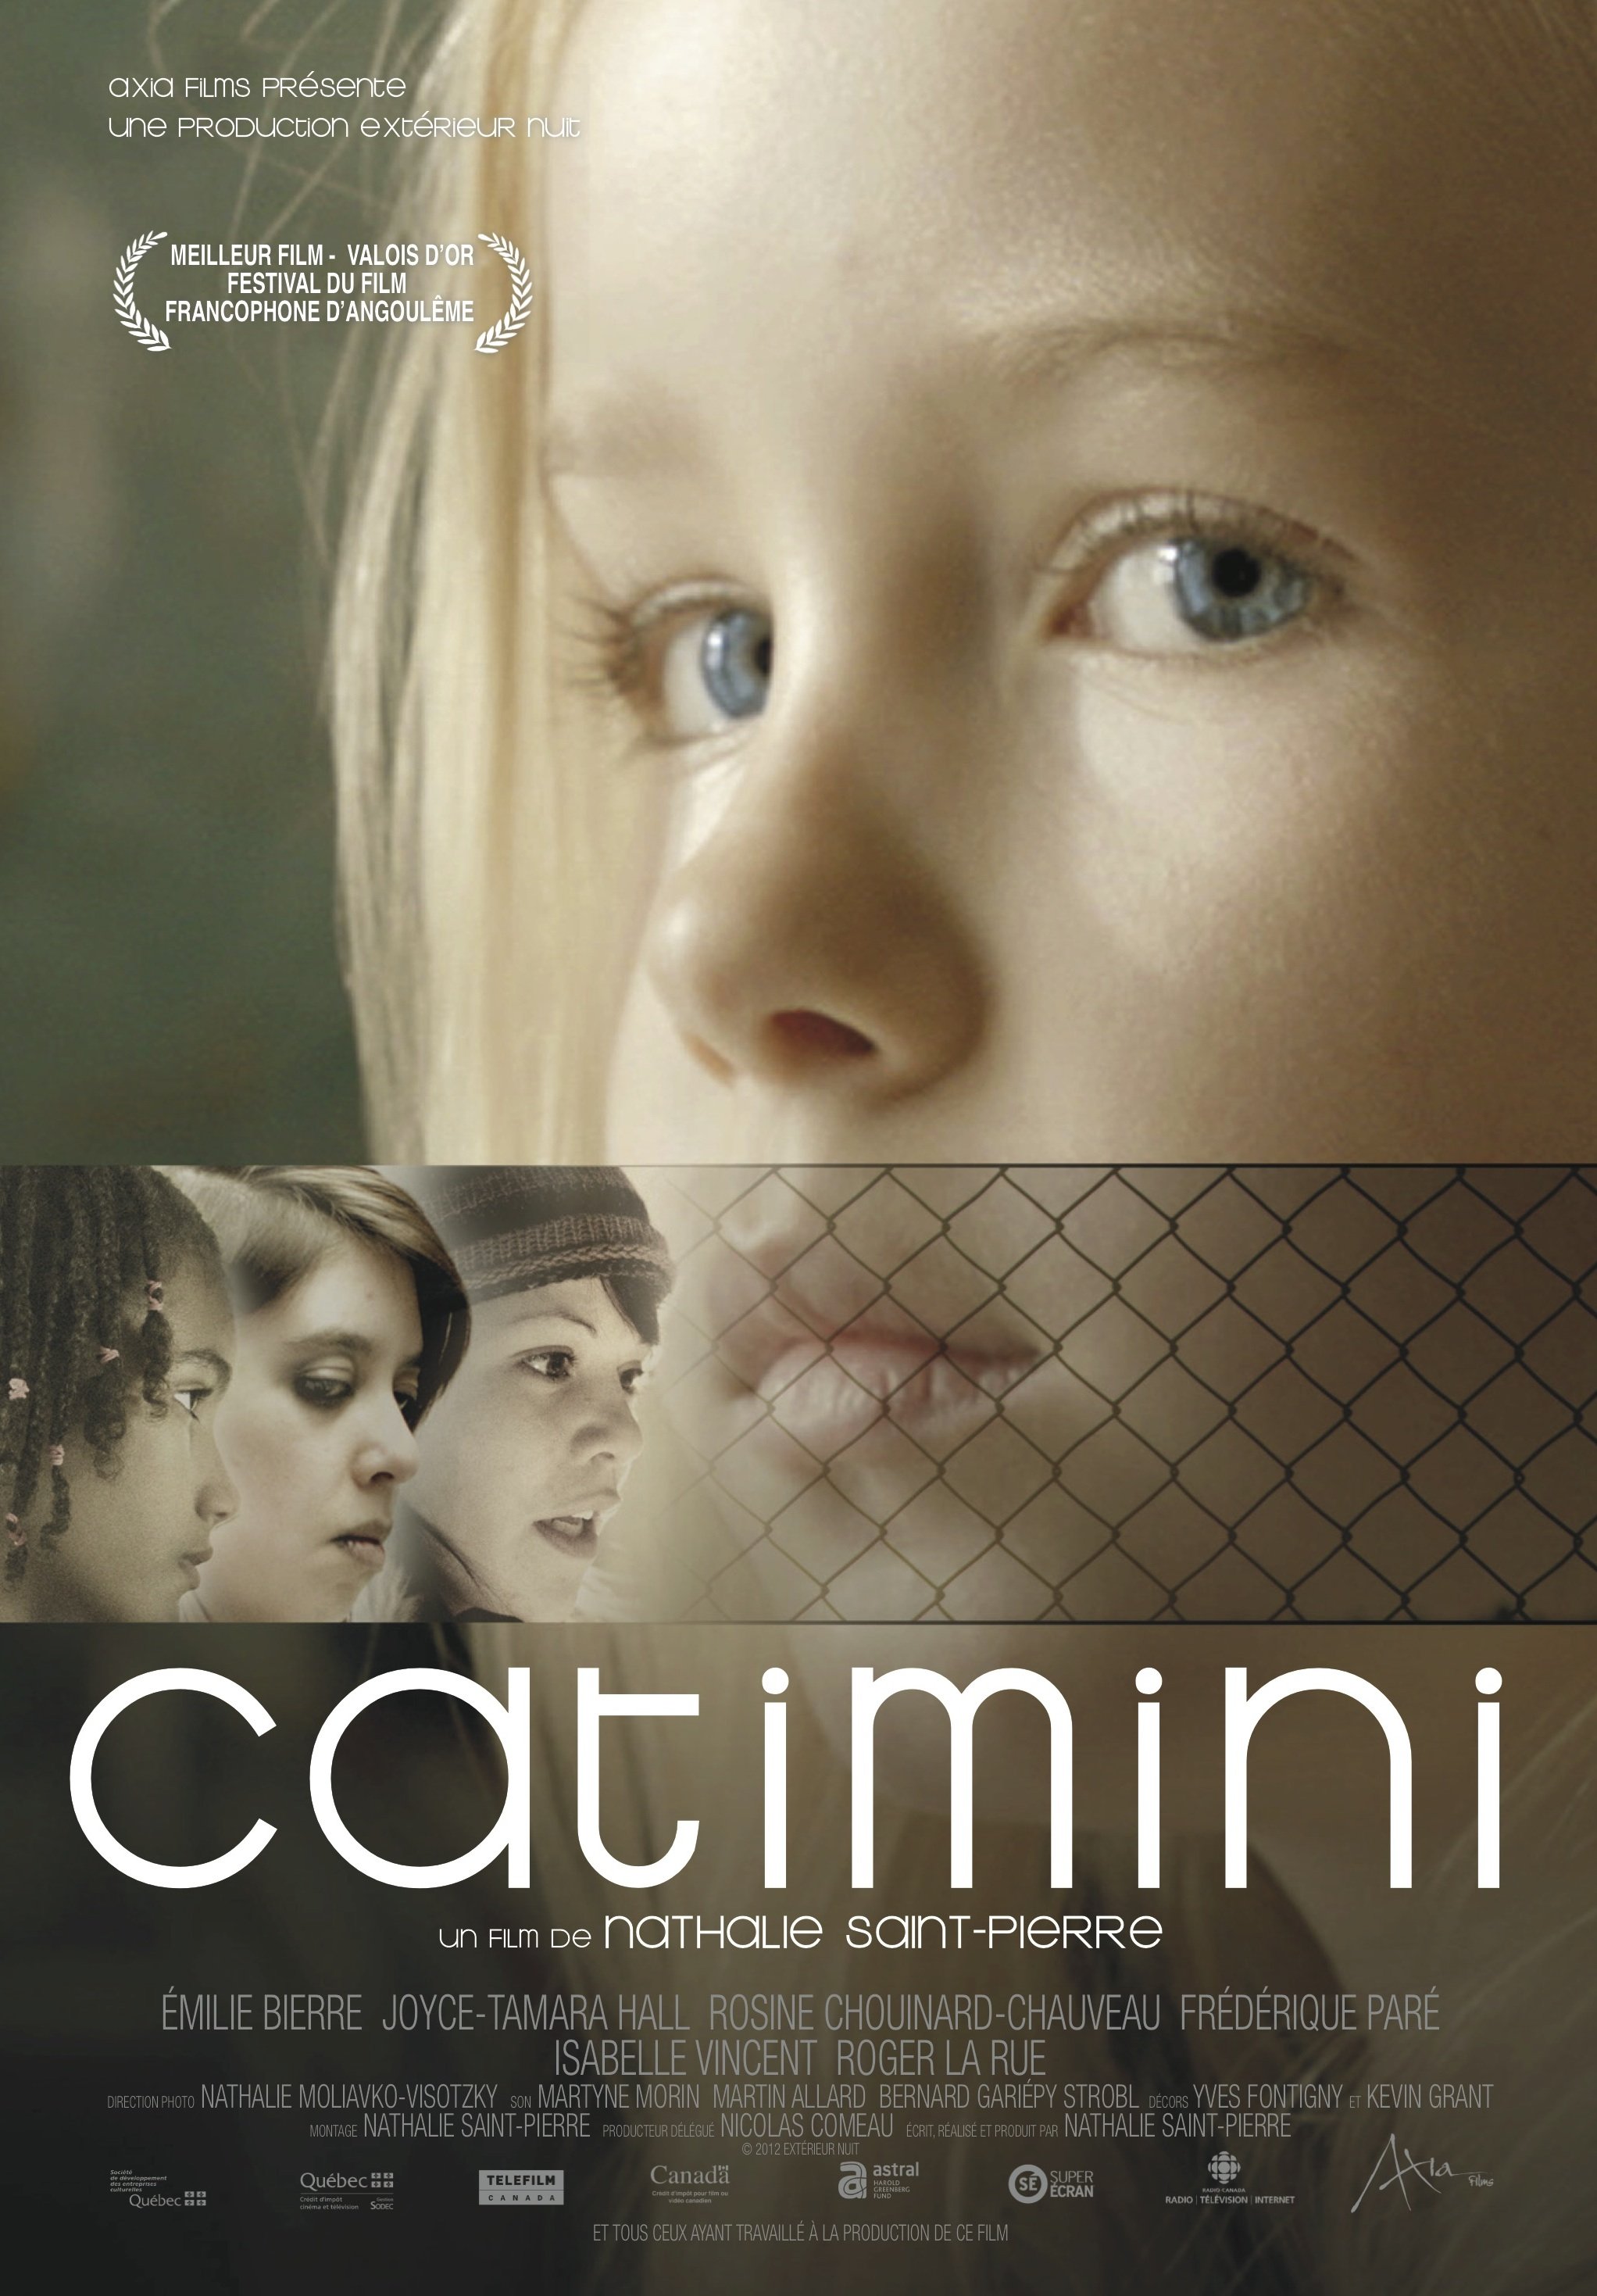 L'affiche du film Catimini